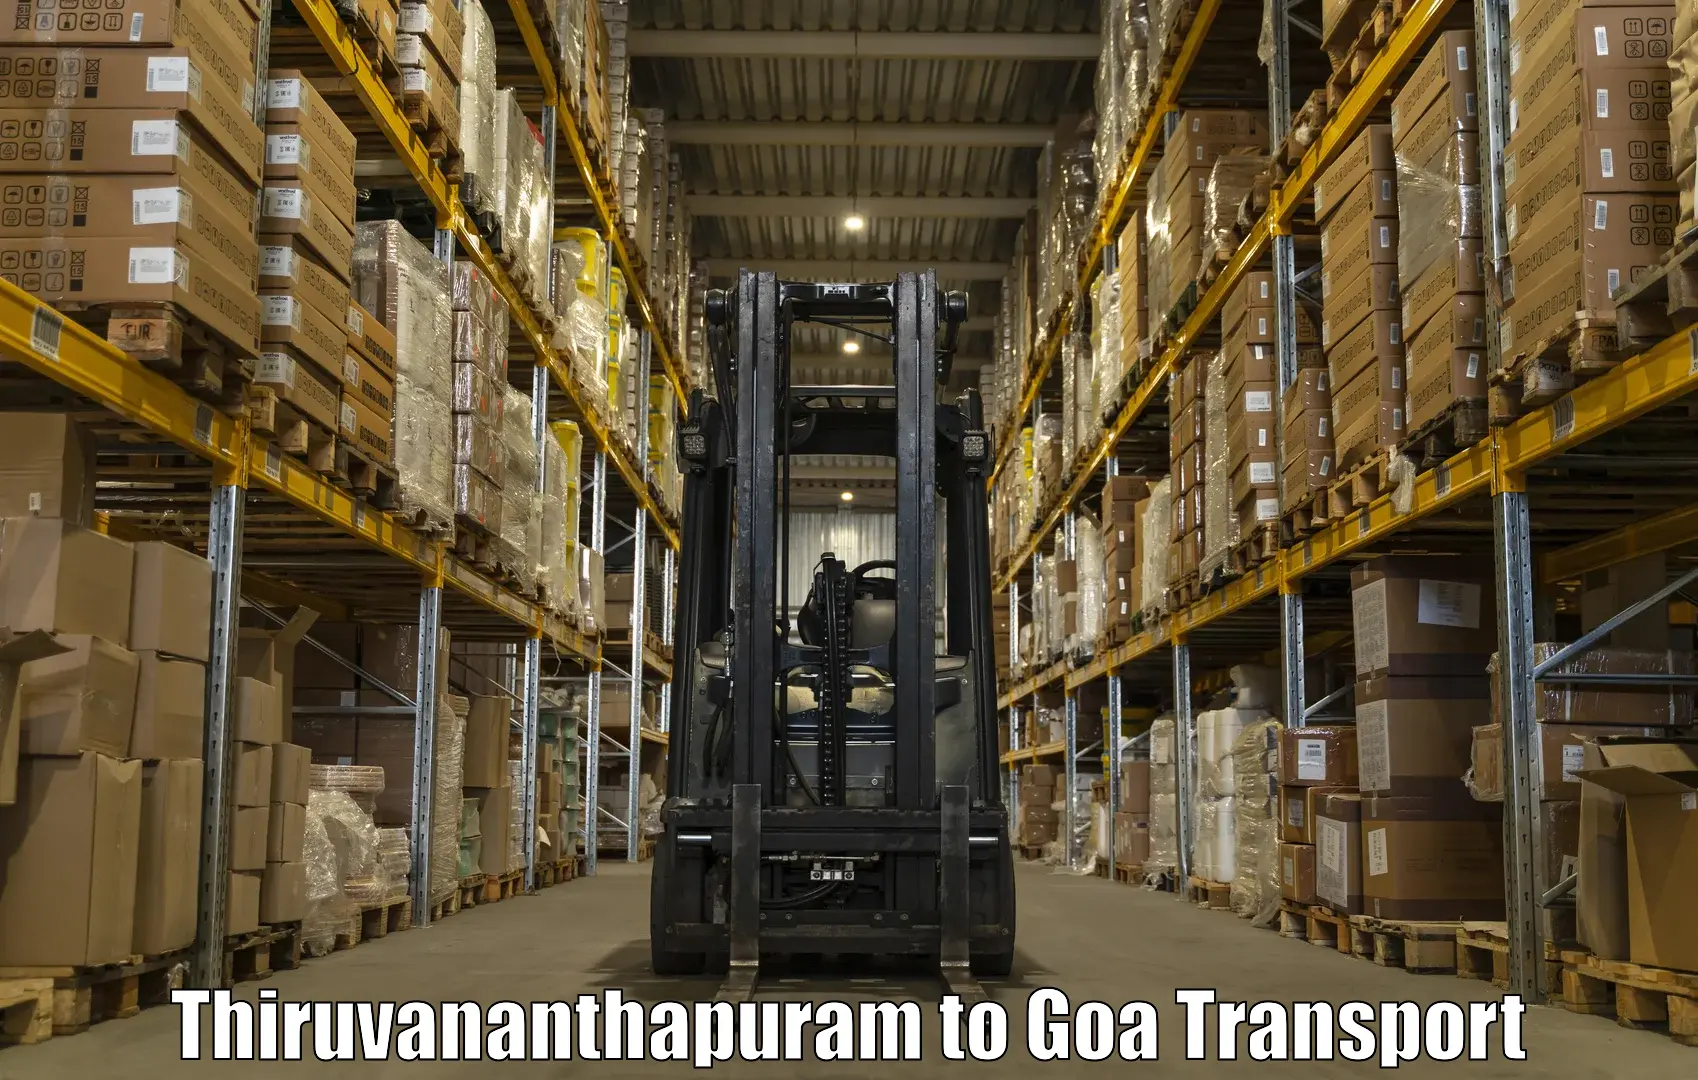 Daily transport service Thiruvananthapuram to Goa